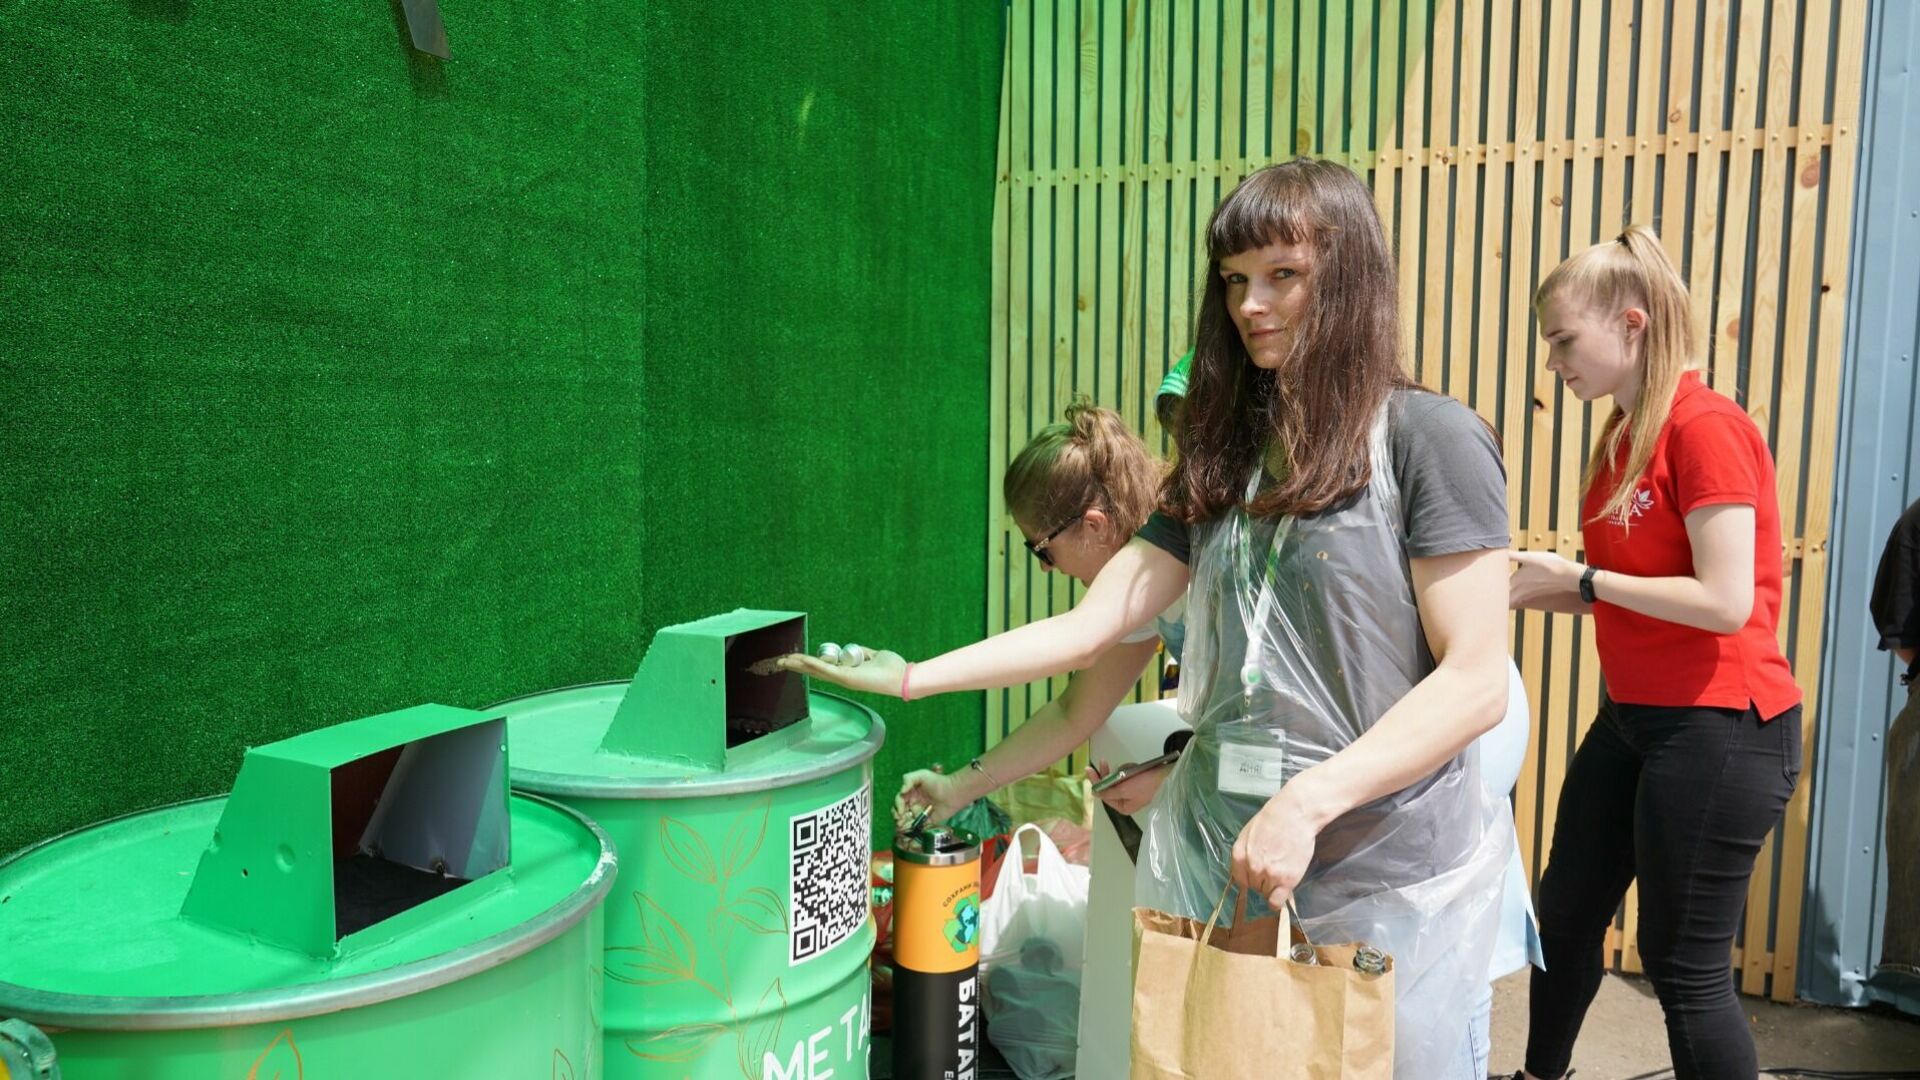 Зеленые итоги года подводит Сбер на Дальнем Востоке: мусор стал вторсырьем